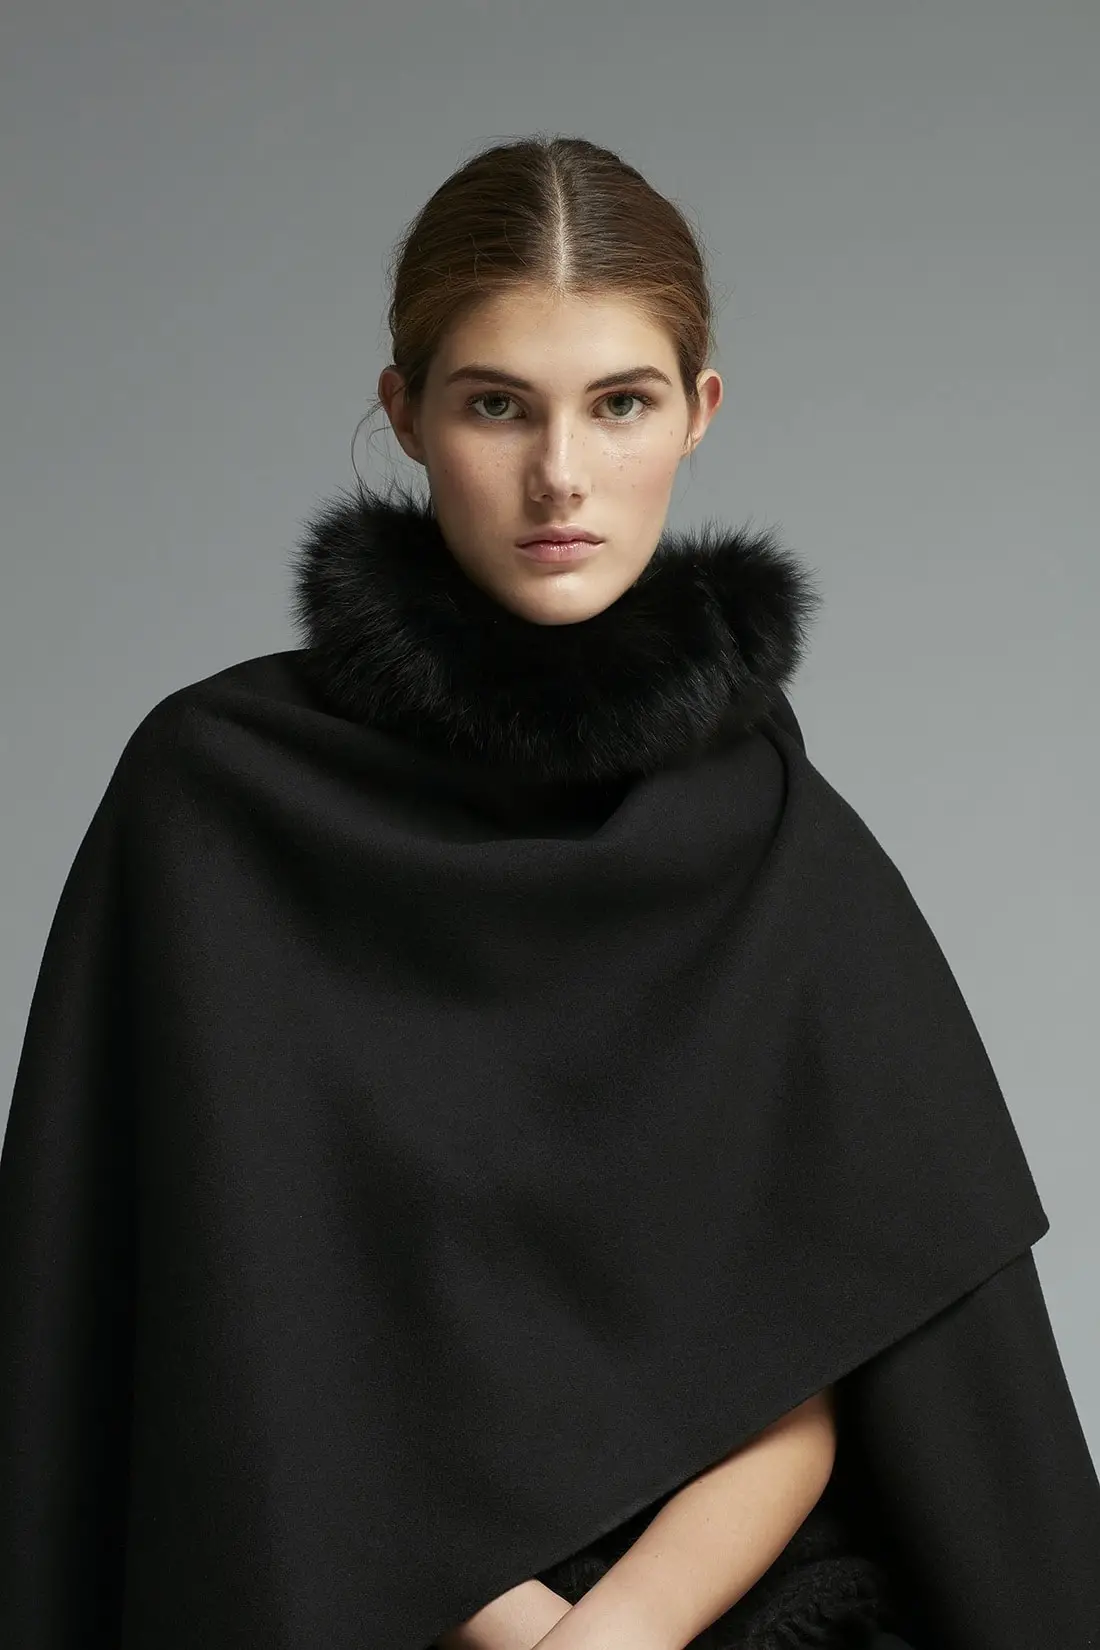 Queen Letizia of Spain wore Carolina Herrera black fur neck cape